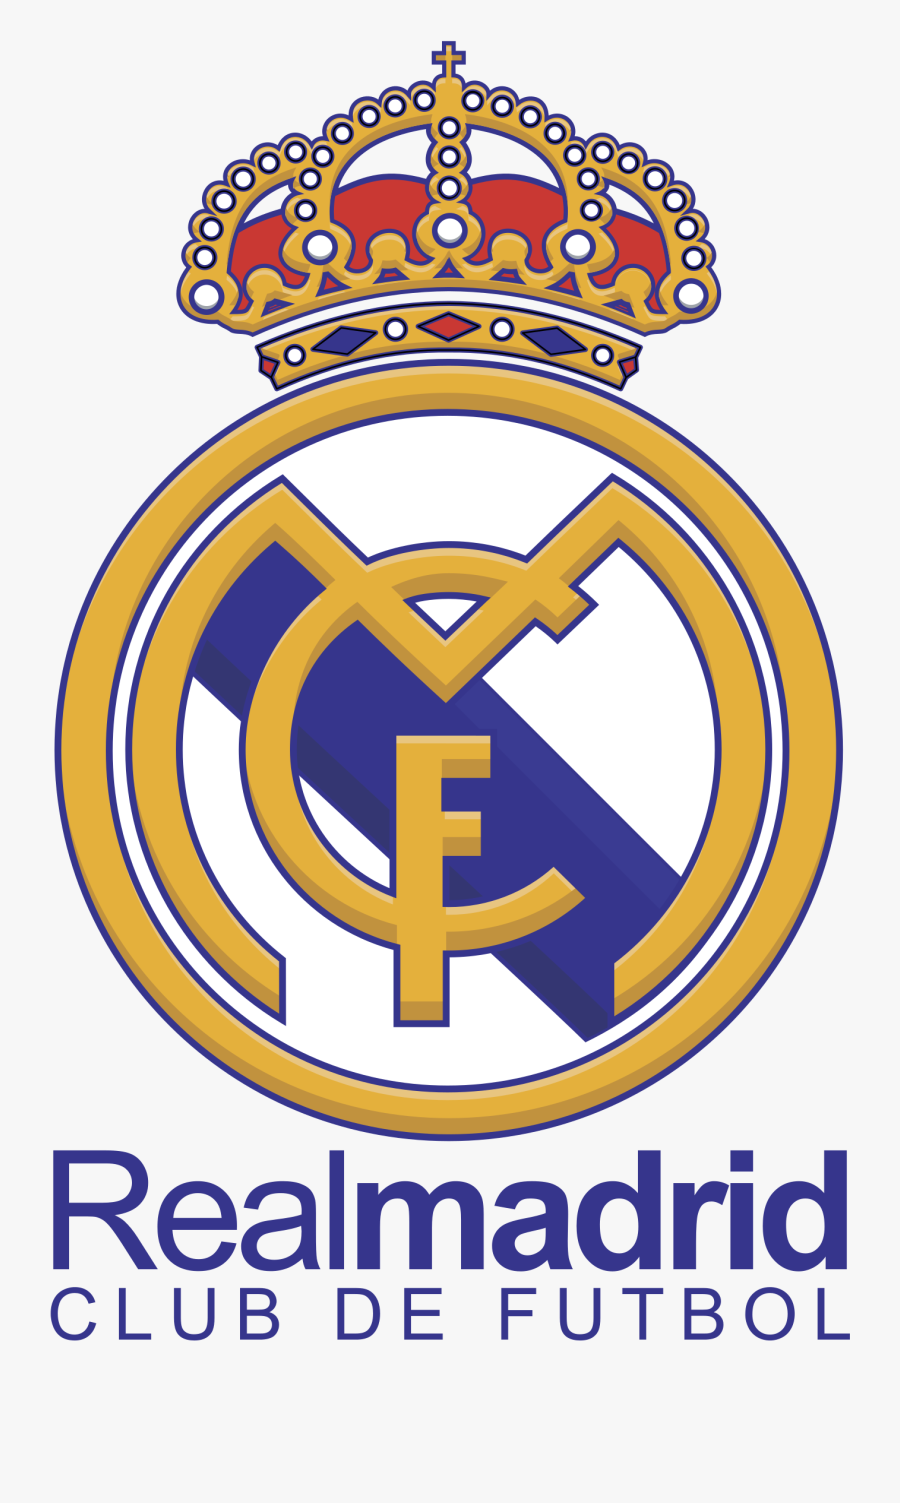 Real Madrid Club De Futbol Png Logo Clipart Image - Real Madrid Club De Football, Transparent Clipart